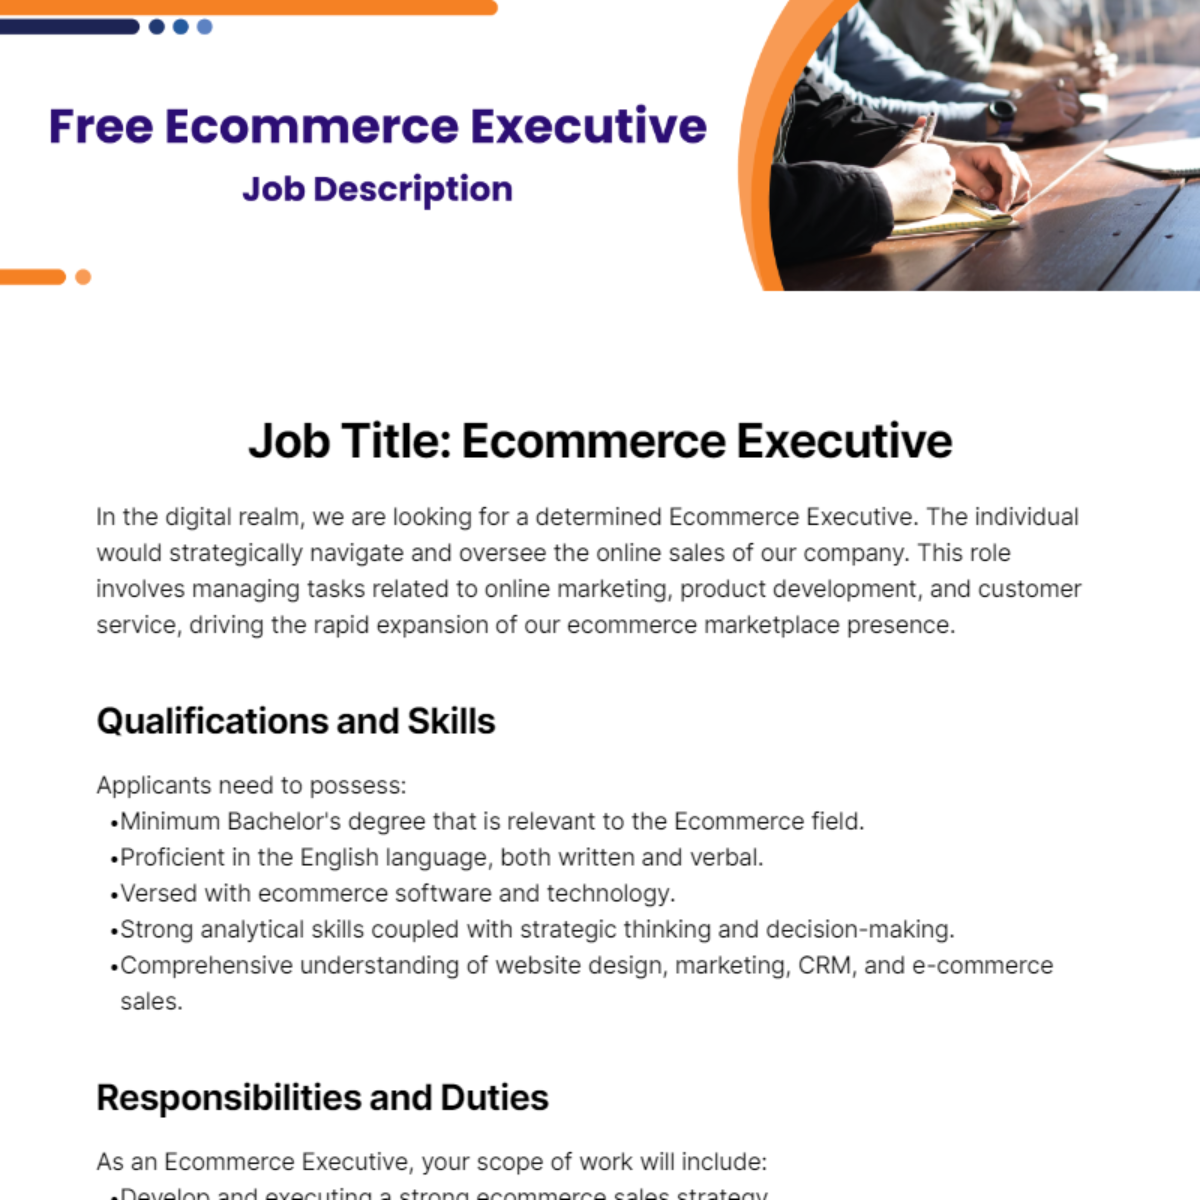 Free Ecommerce Executive Job Description Template